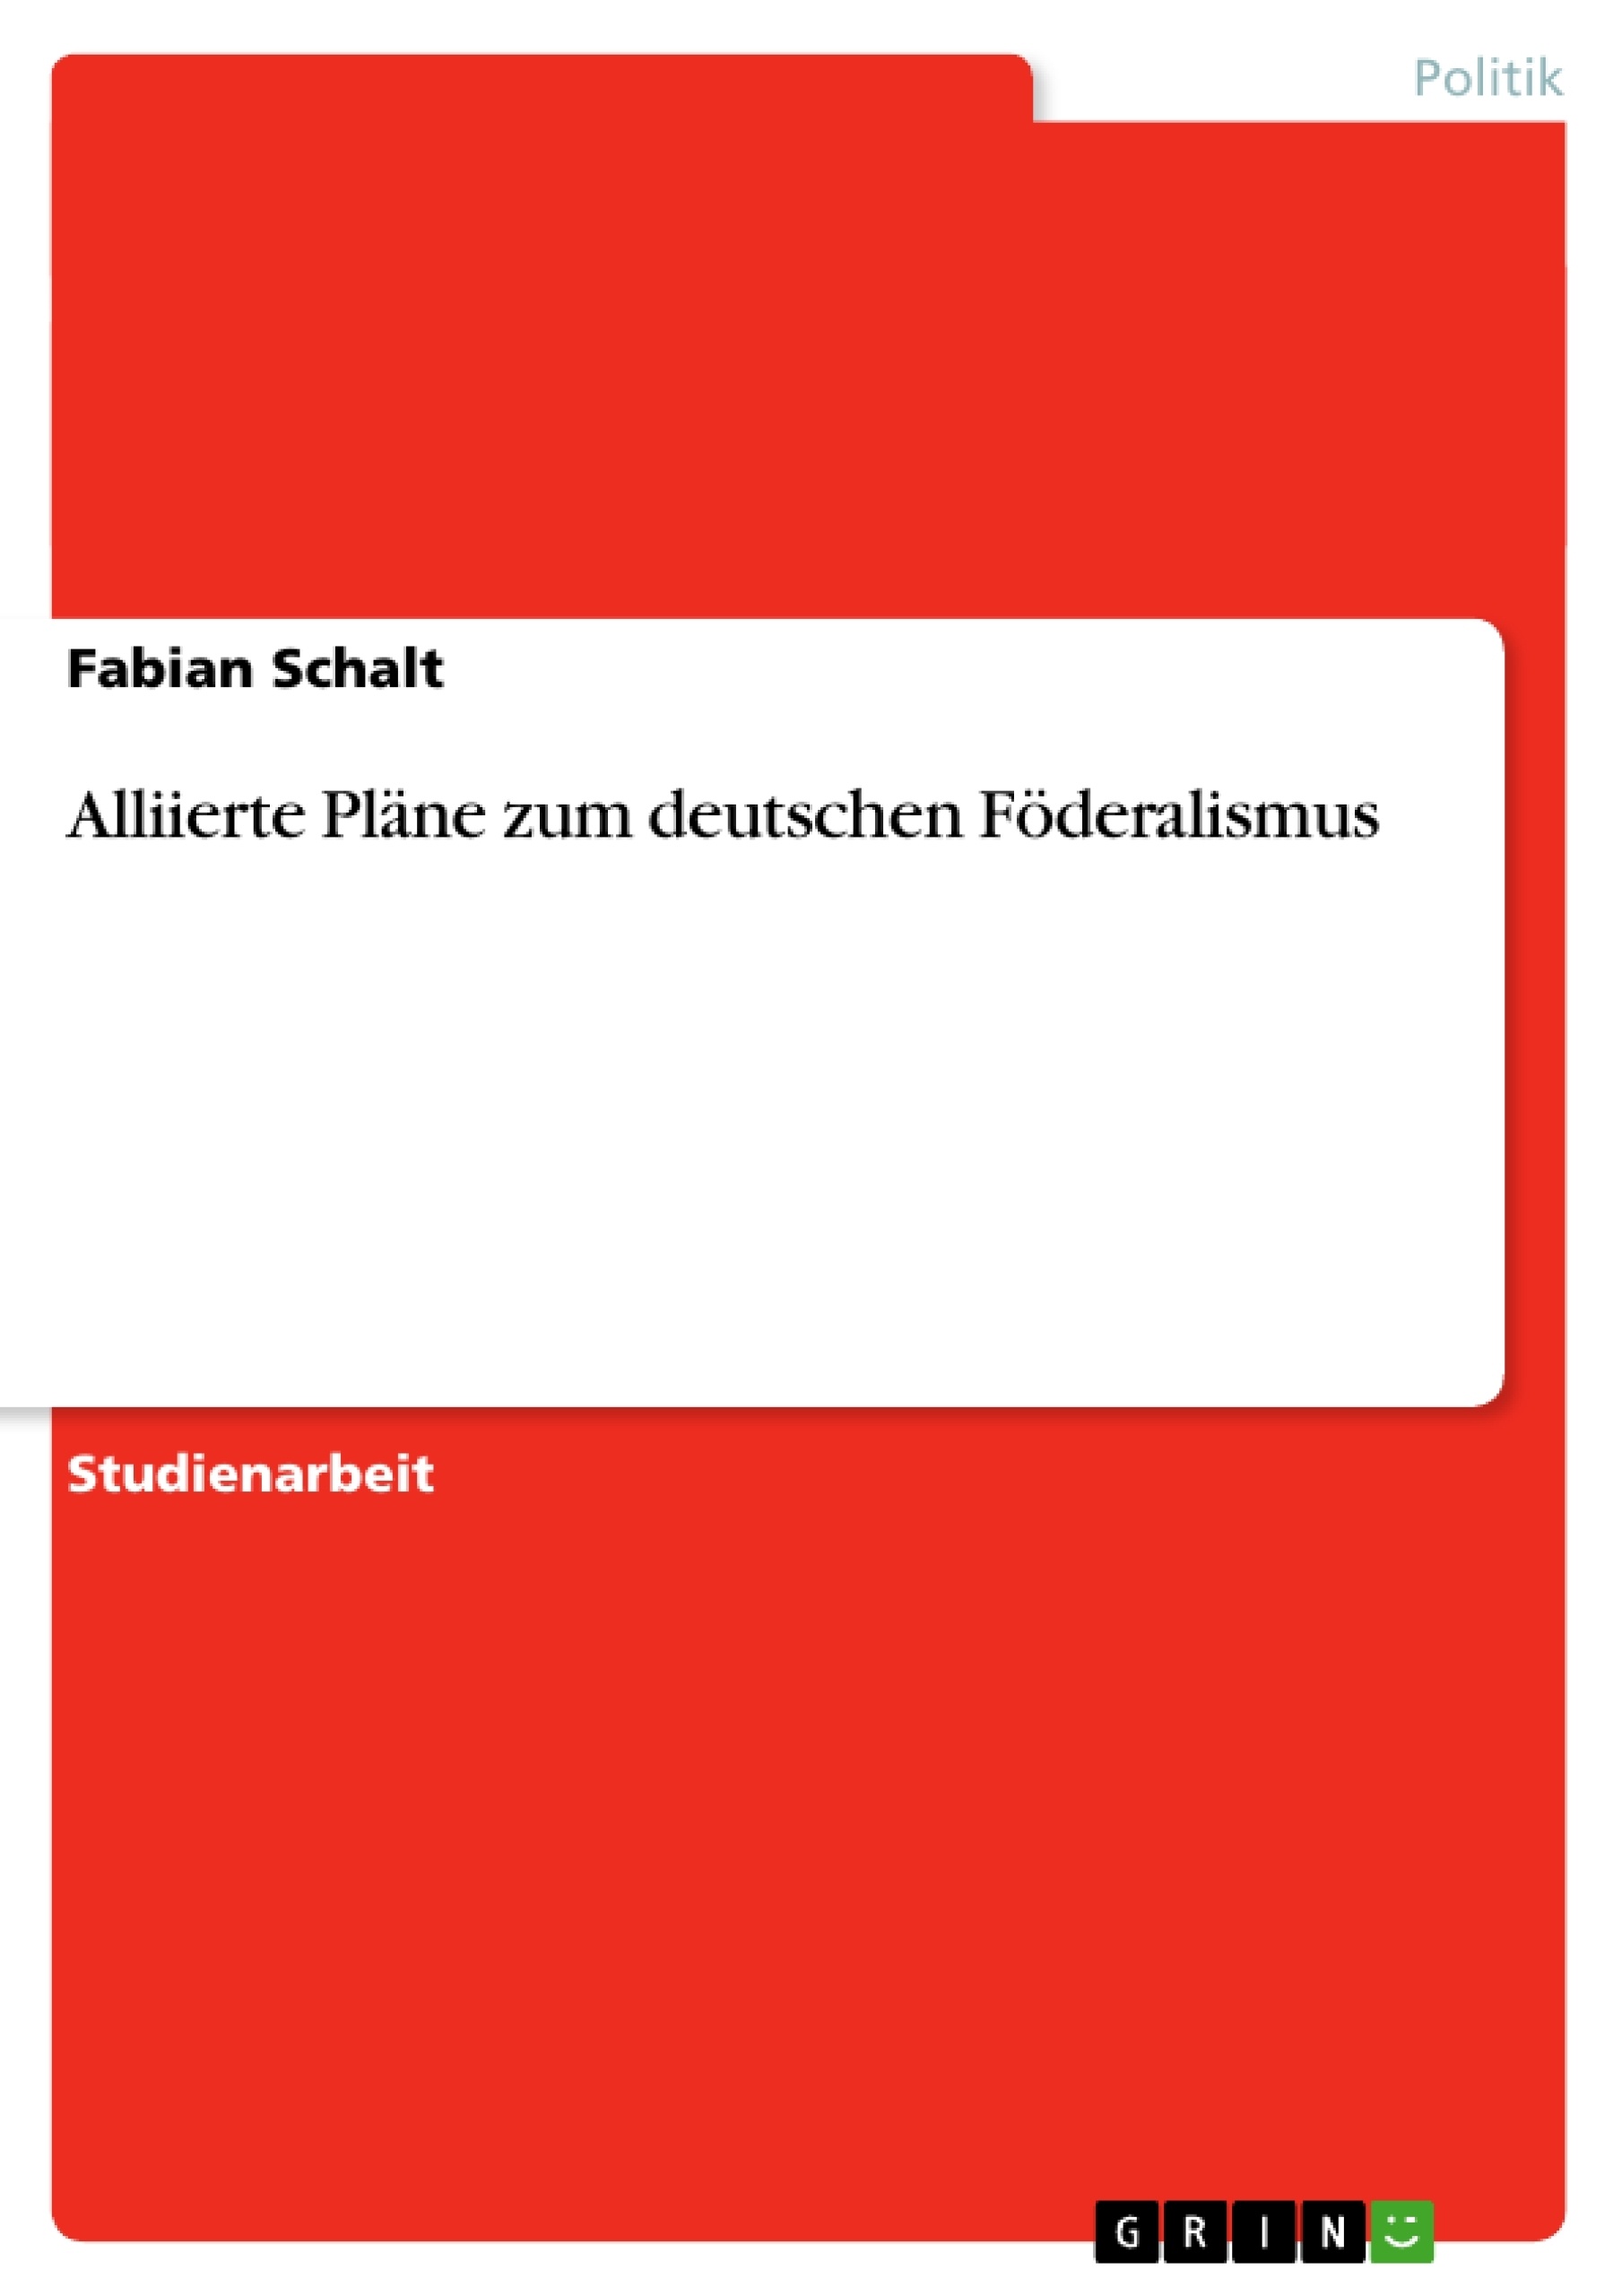 Título: Alliierte Pläne zum deutschen Föderalismus